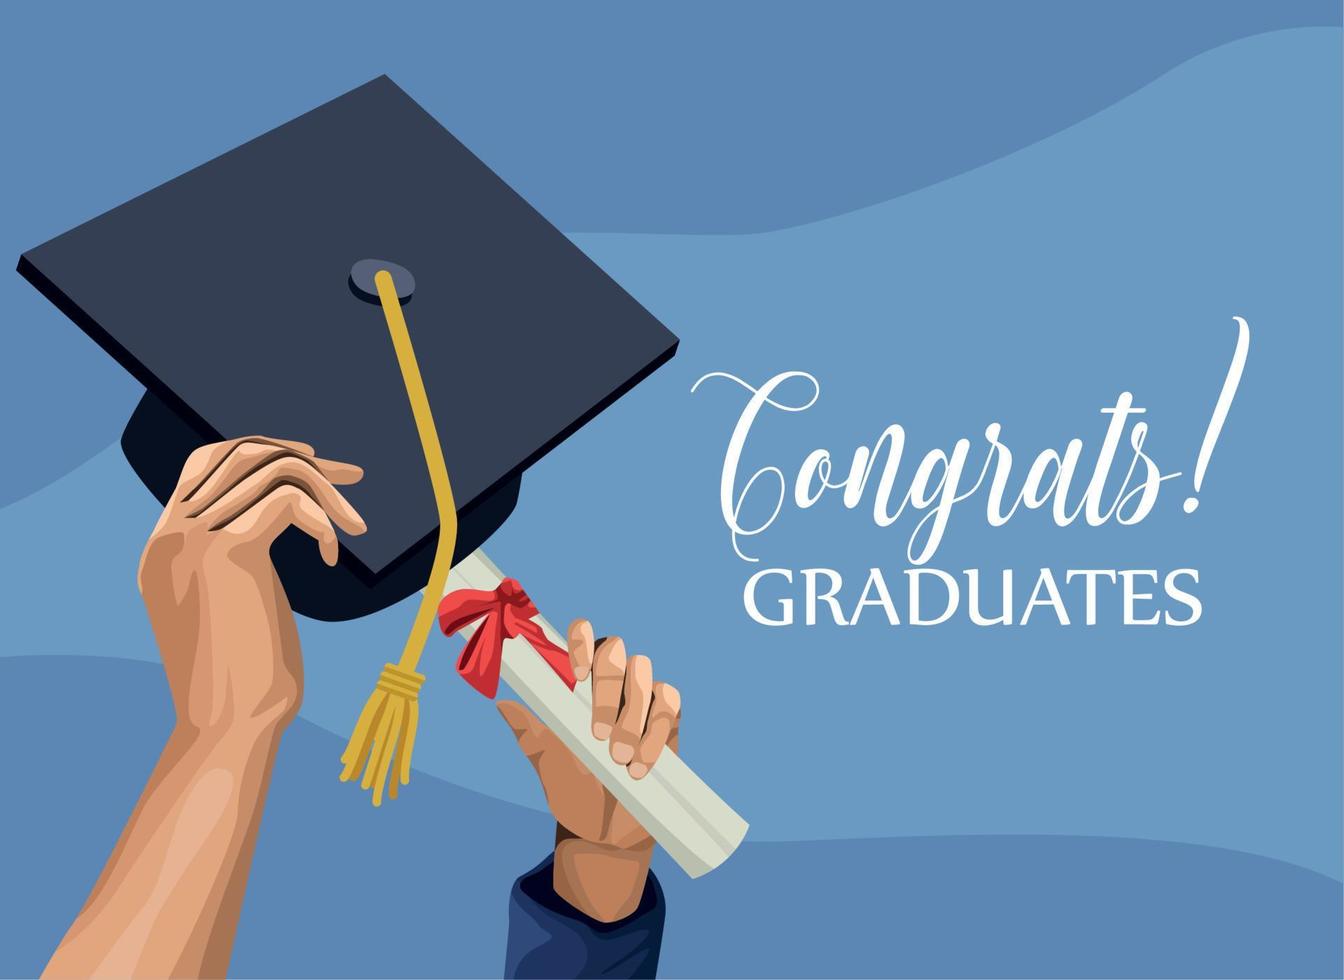 congrats graduates card vector